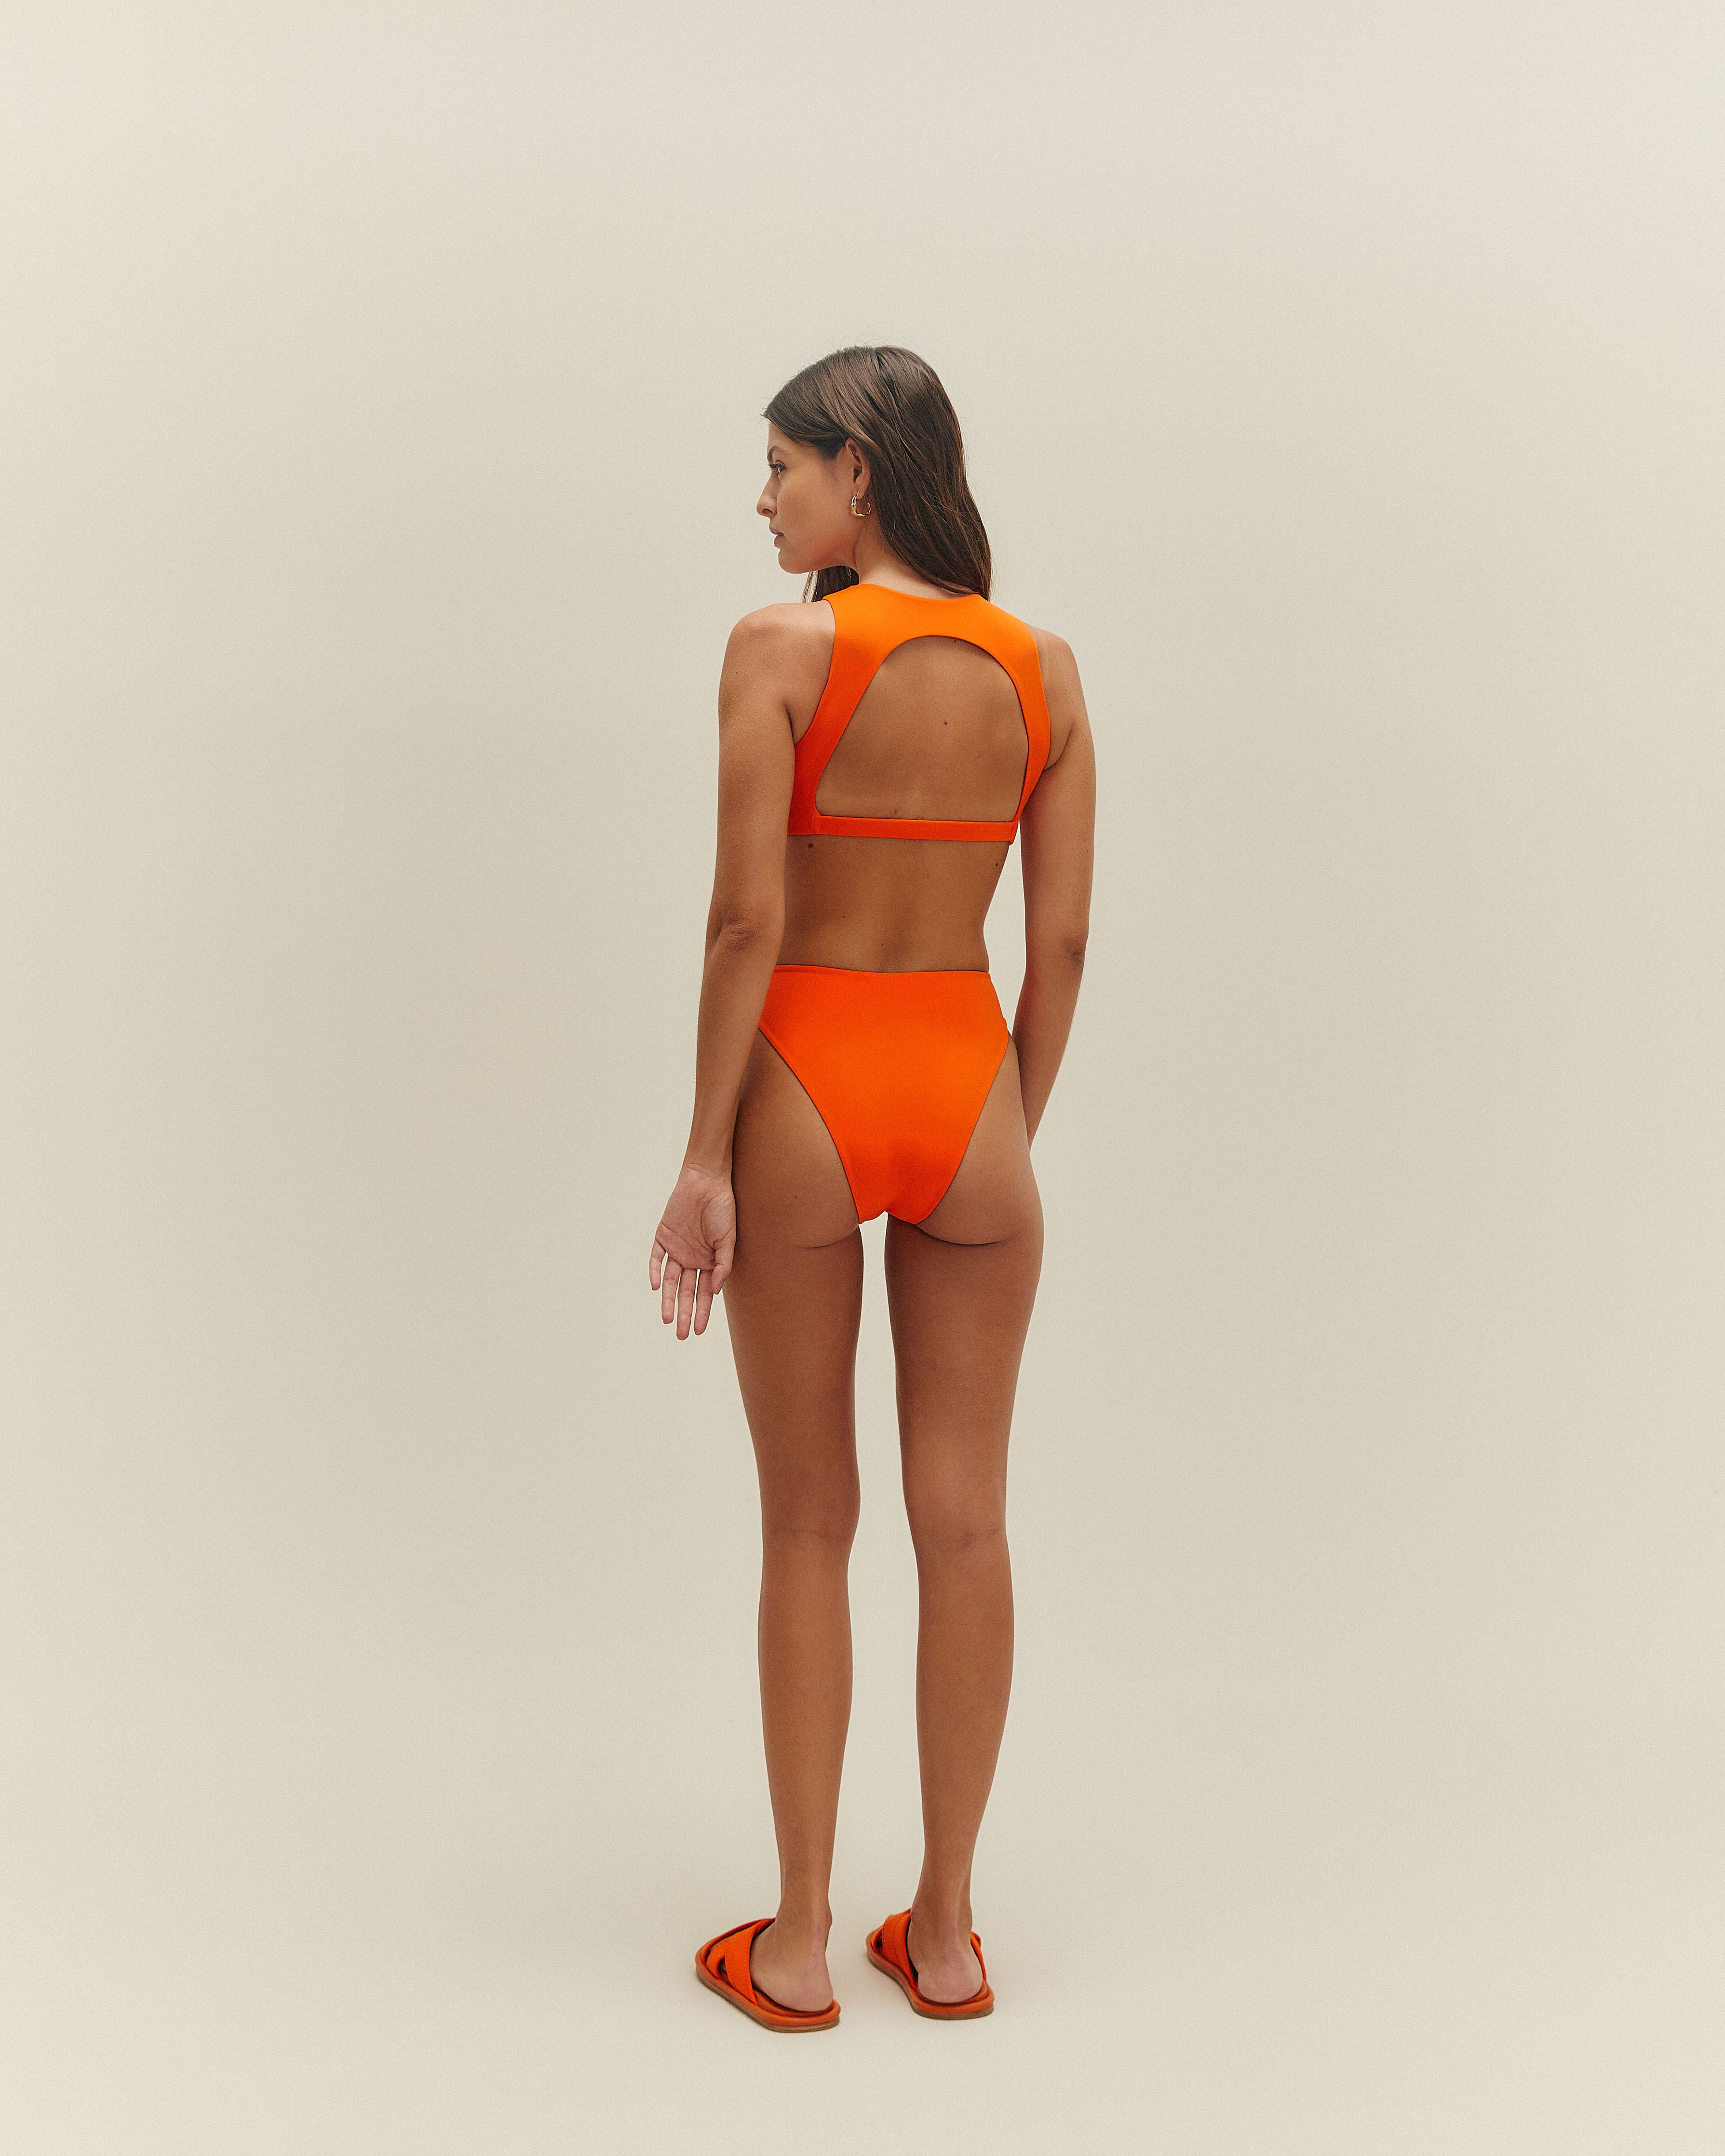 Outback Hot Pants Sunrise Orange – The Enviro Co